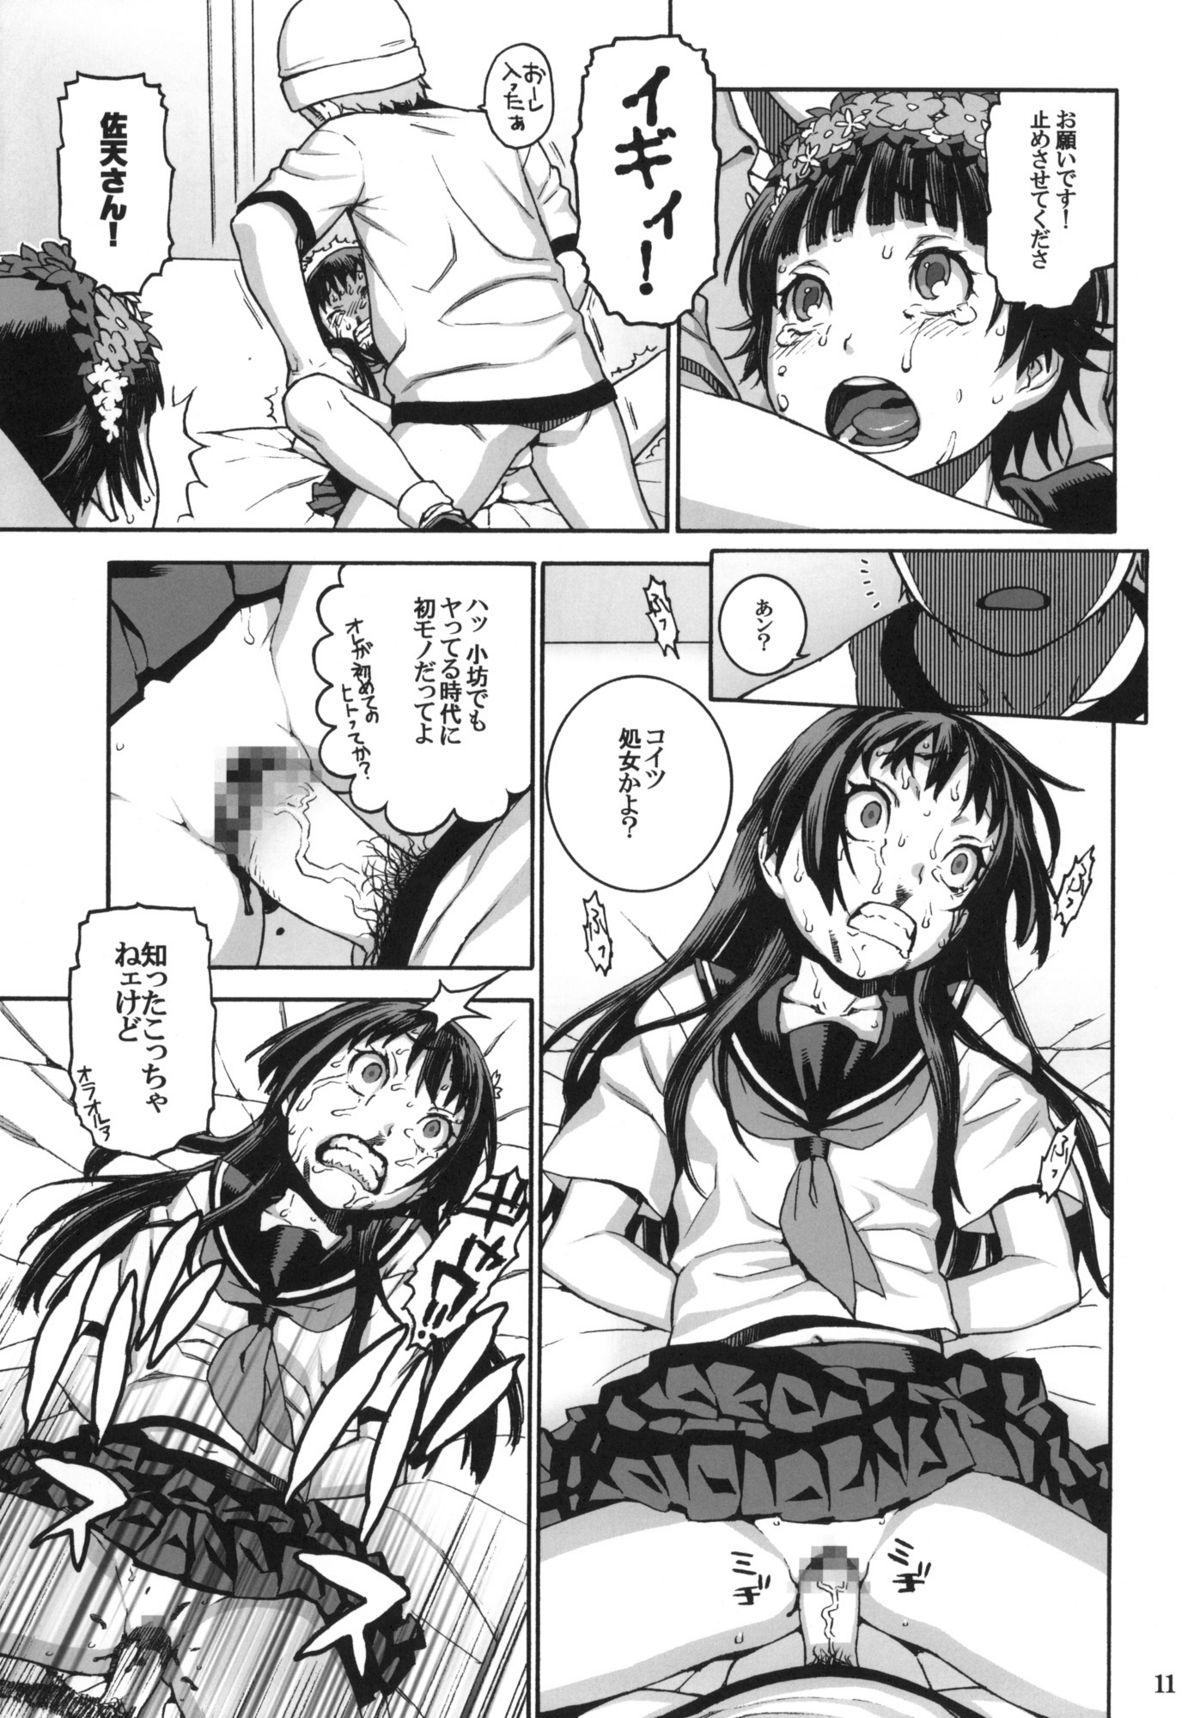 Tetas Grandes Toaru Jiken no Heroines - Toaru kagaku no railgun Softcore - Page 10